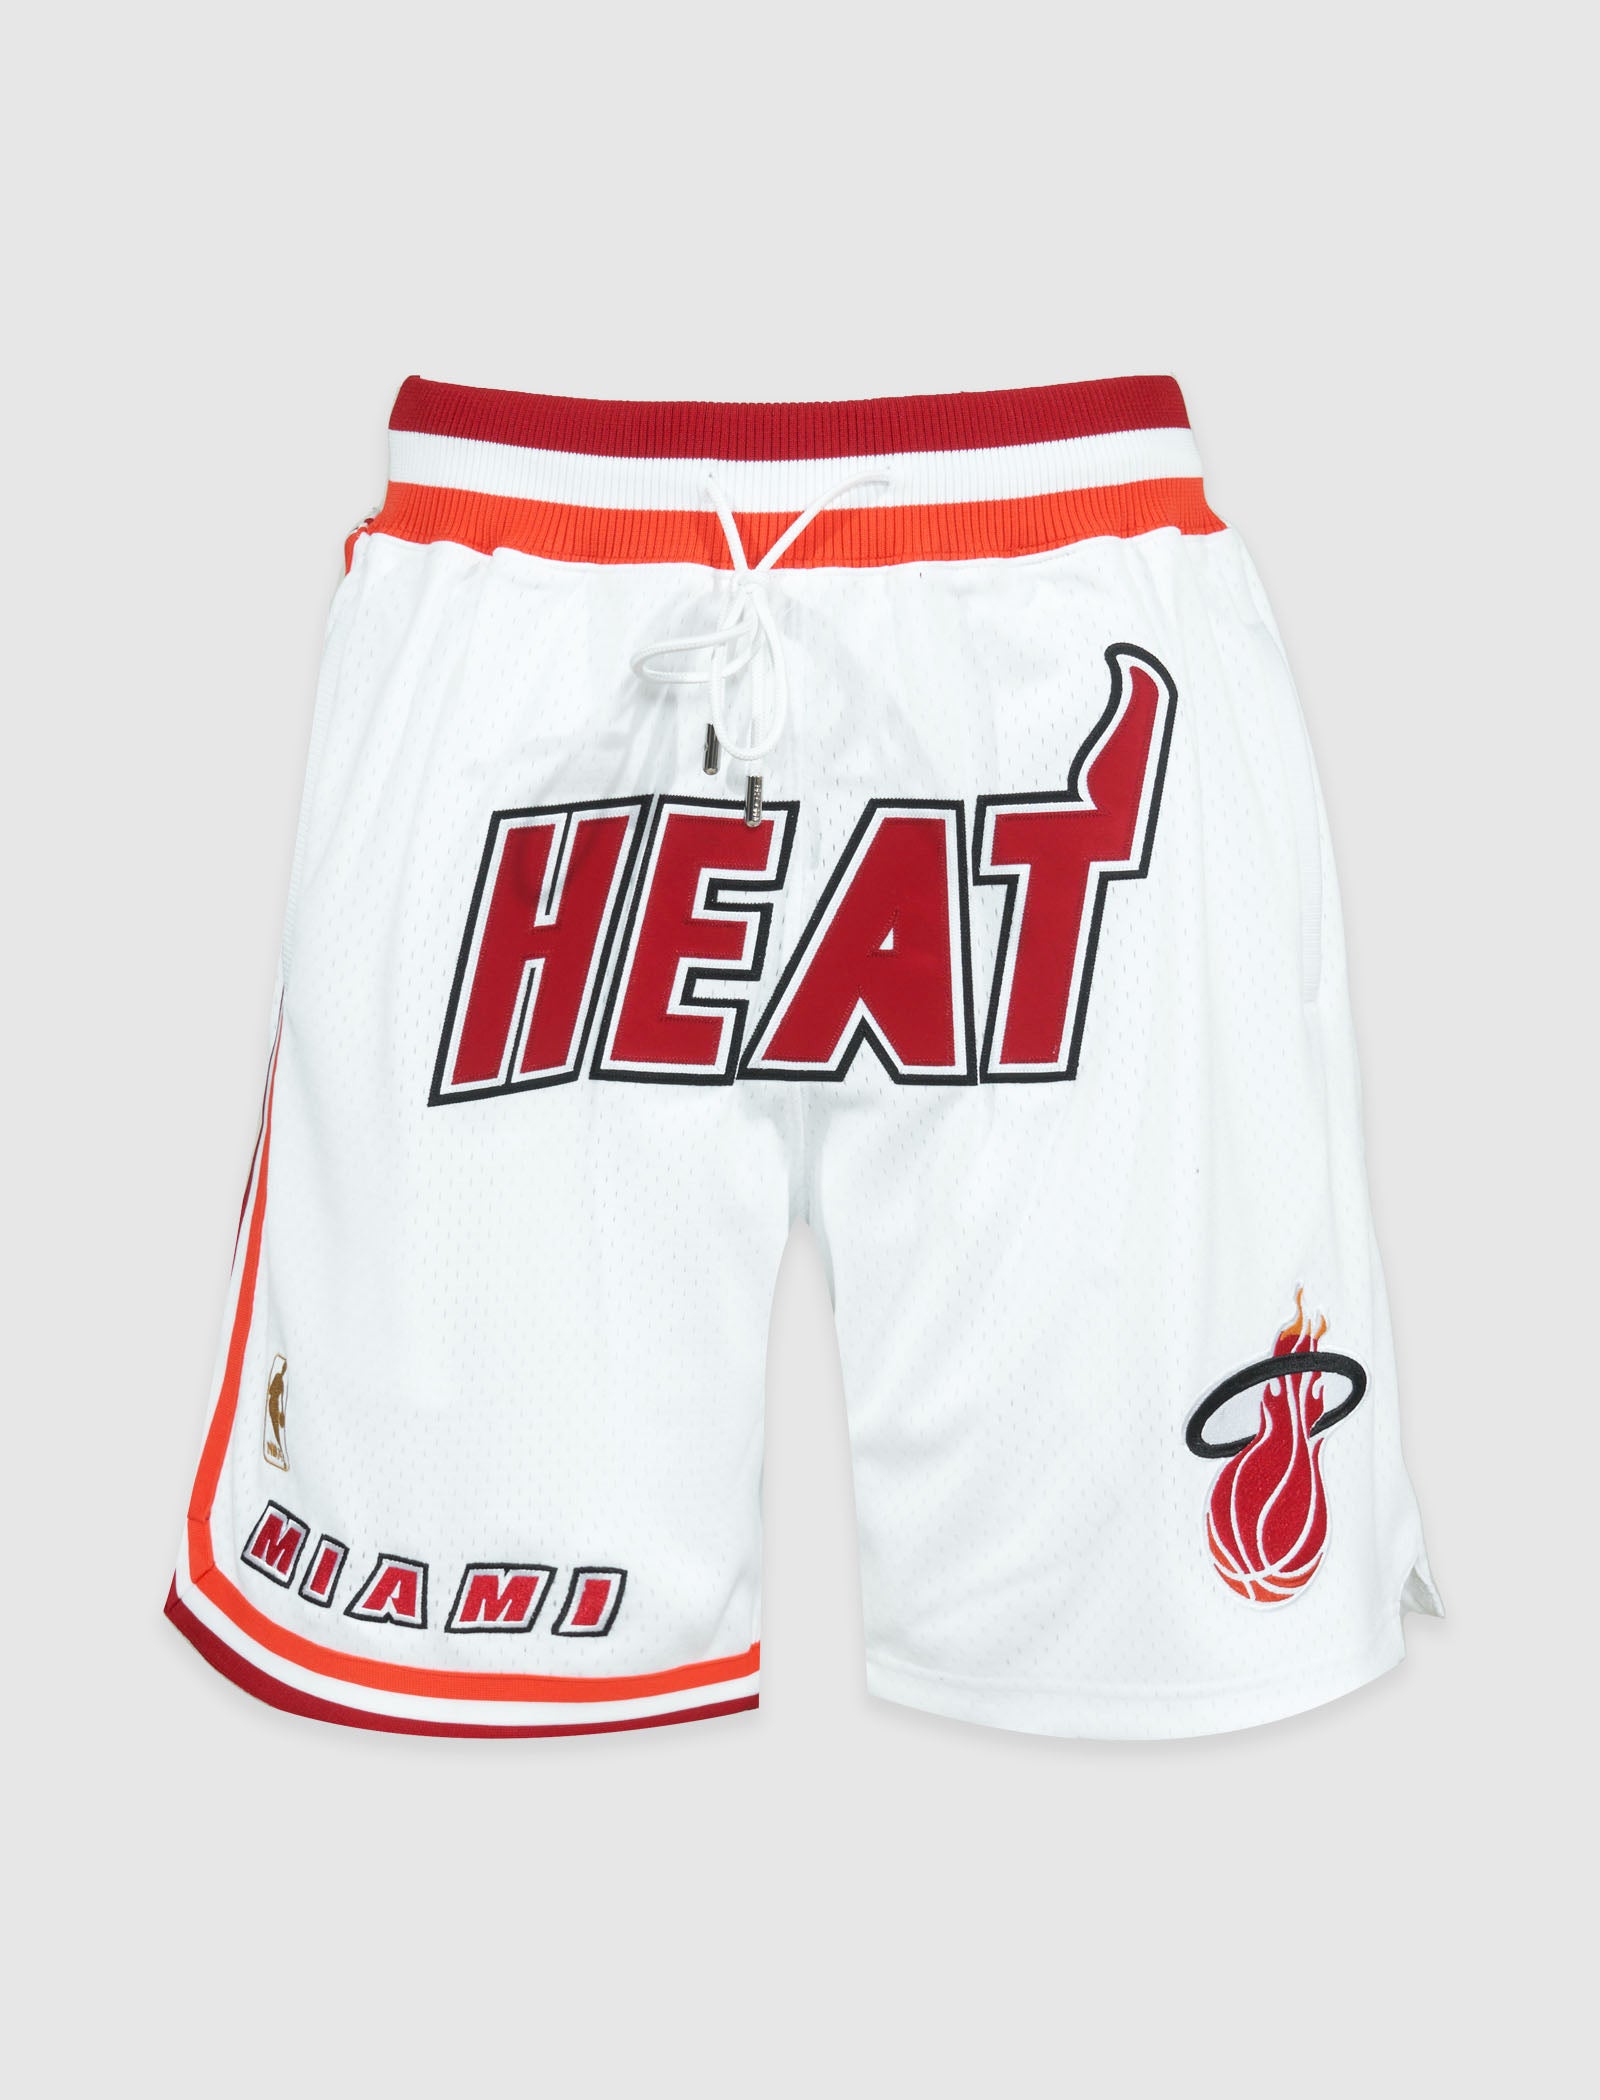 Nike Men's Miami Heat Red Mesh Shorts, Large